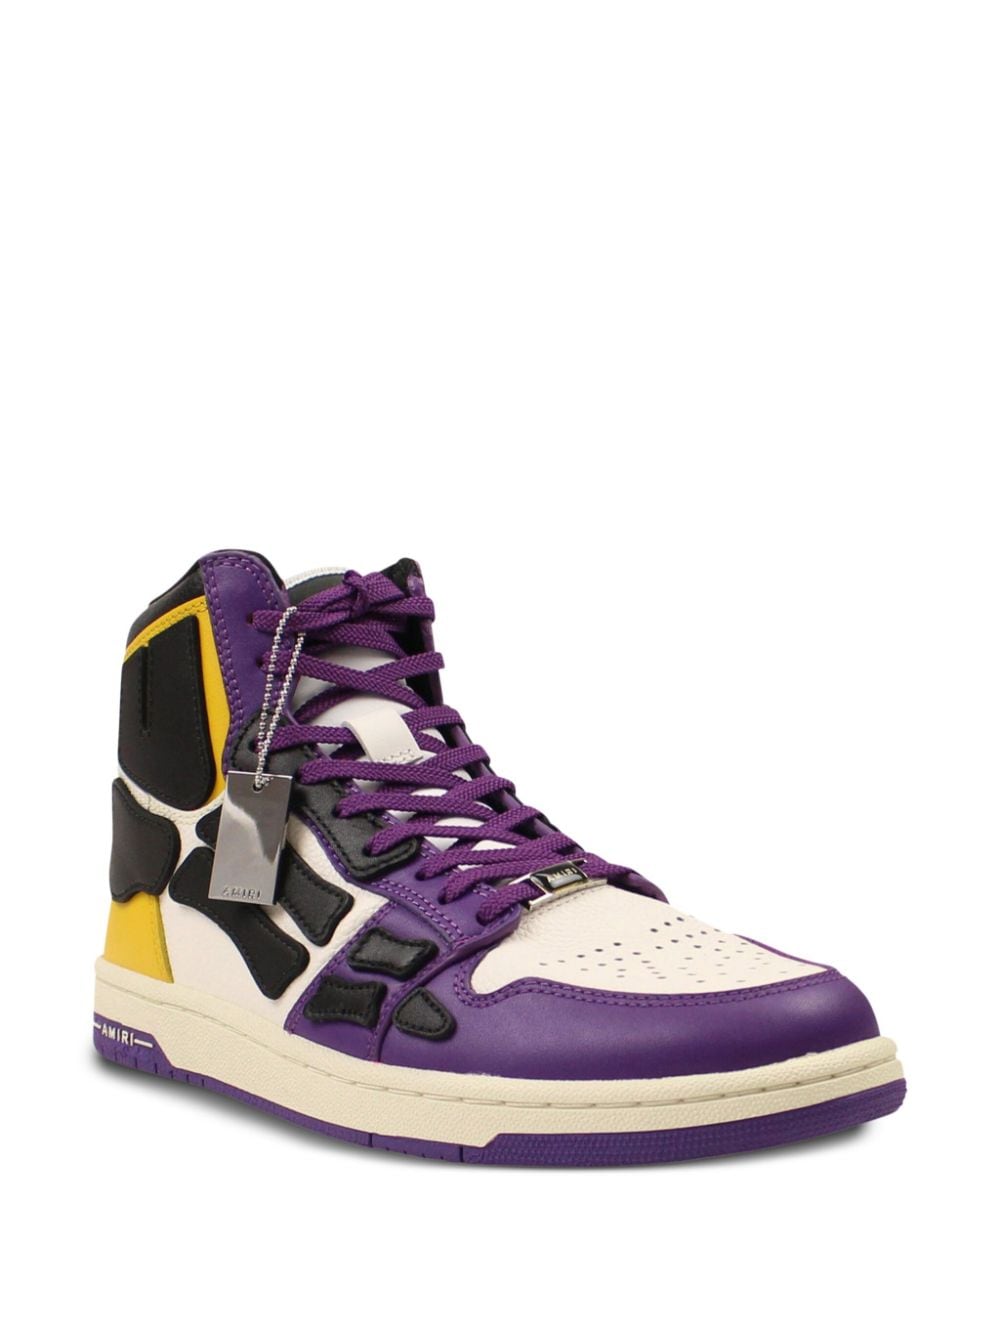 AMIRI Skel Top "Purple/White/Gold" sneakers - Paars